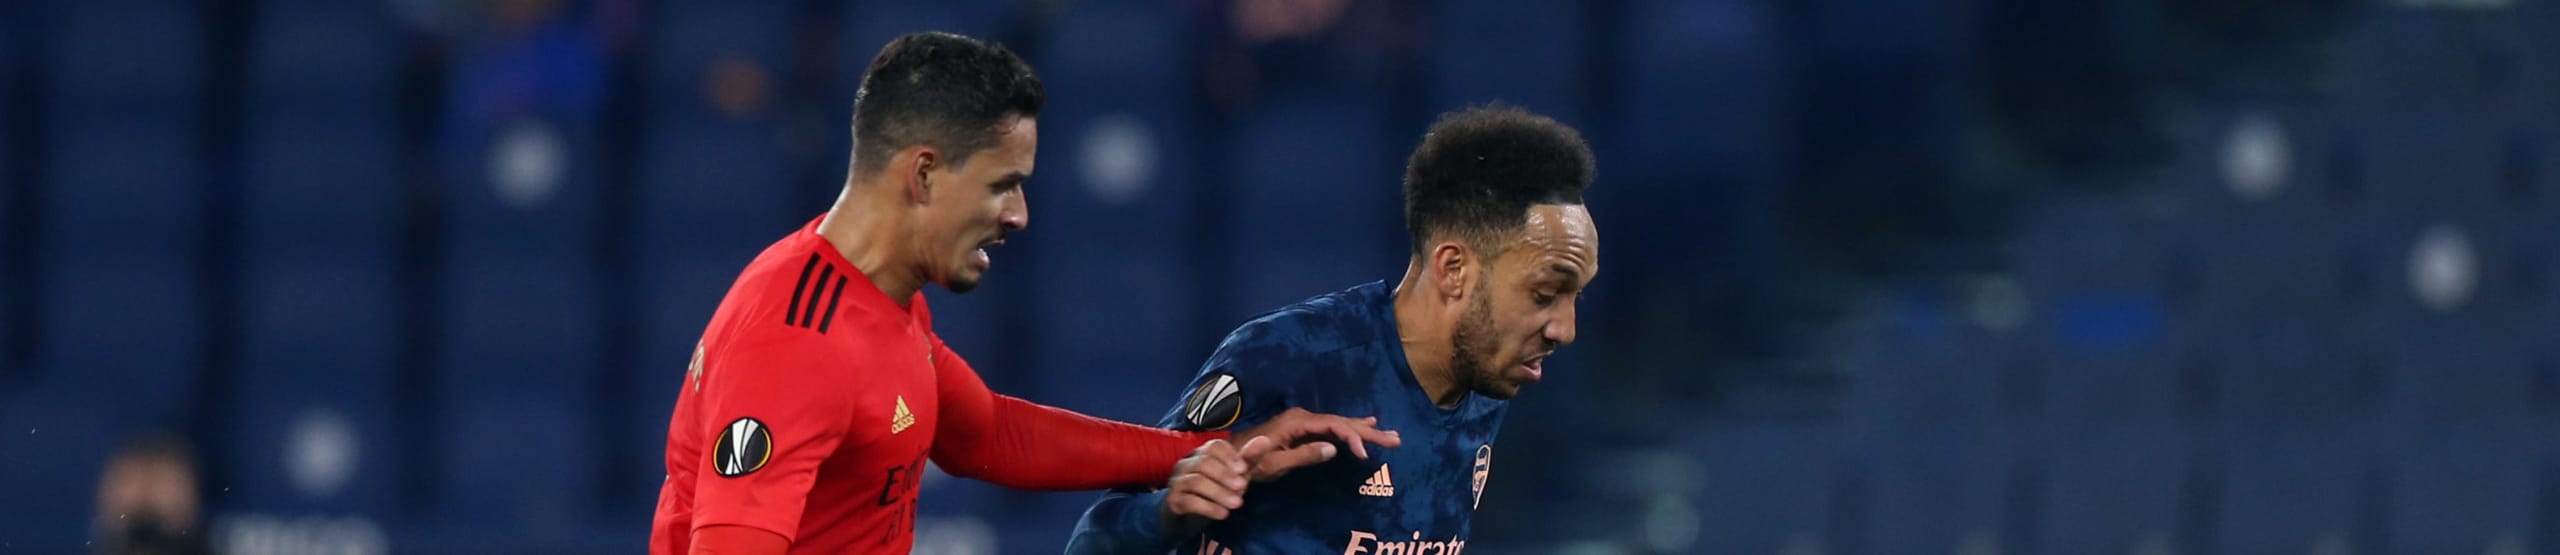 Pronostici Europa League: Lilla e Bayer a caccia di rimonte, chi passa tra Arsenal e Benfica?